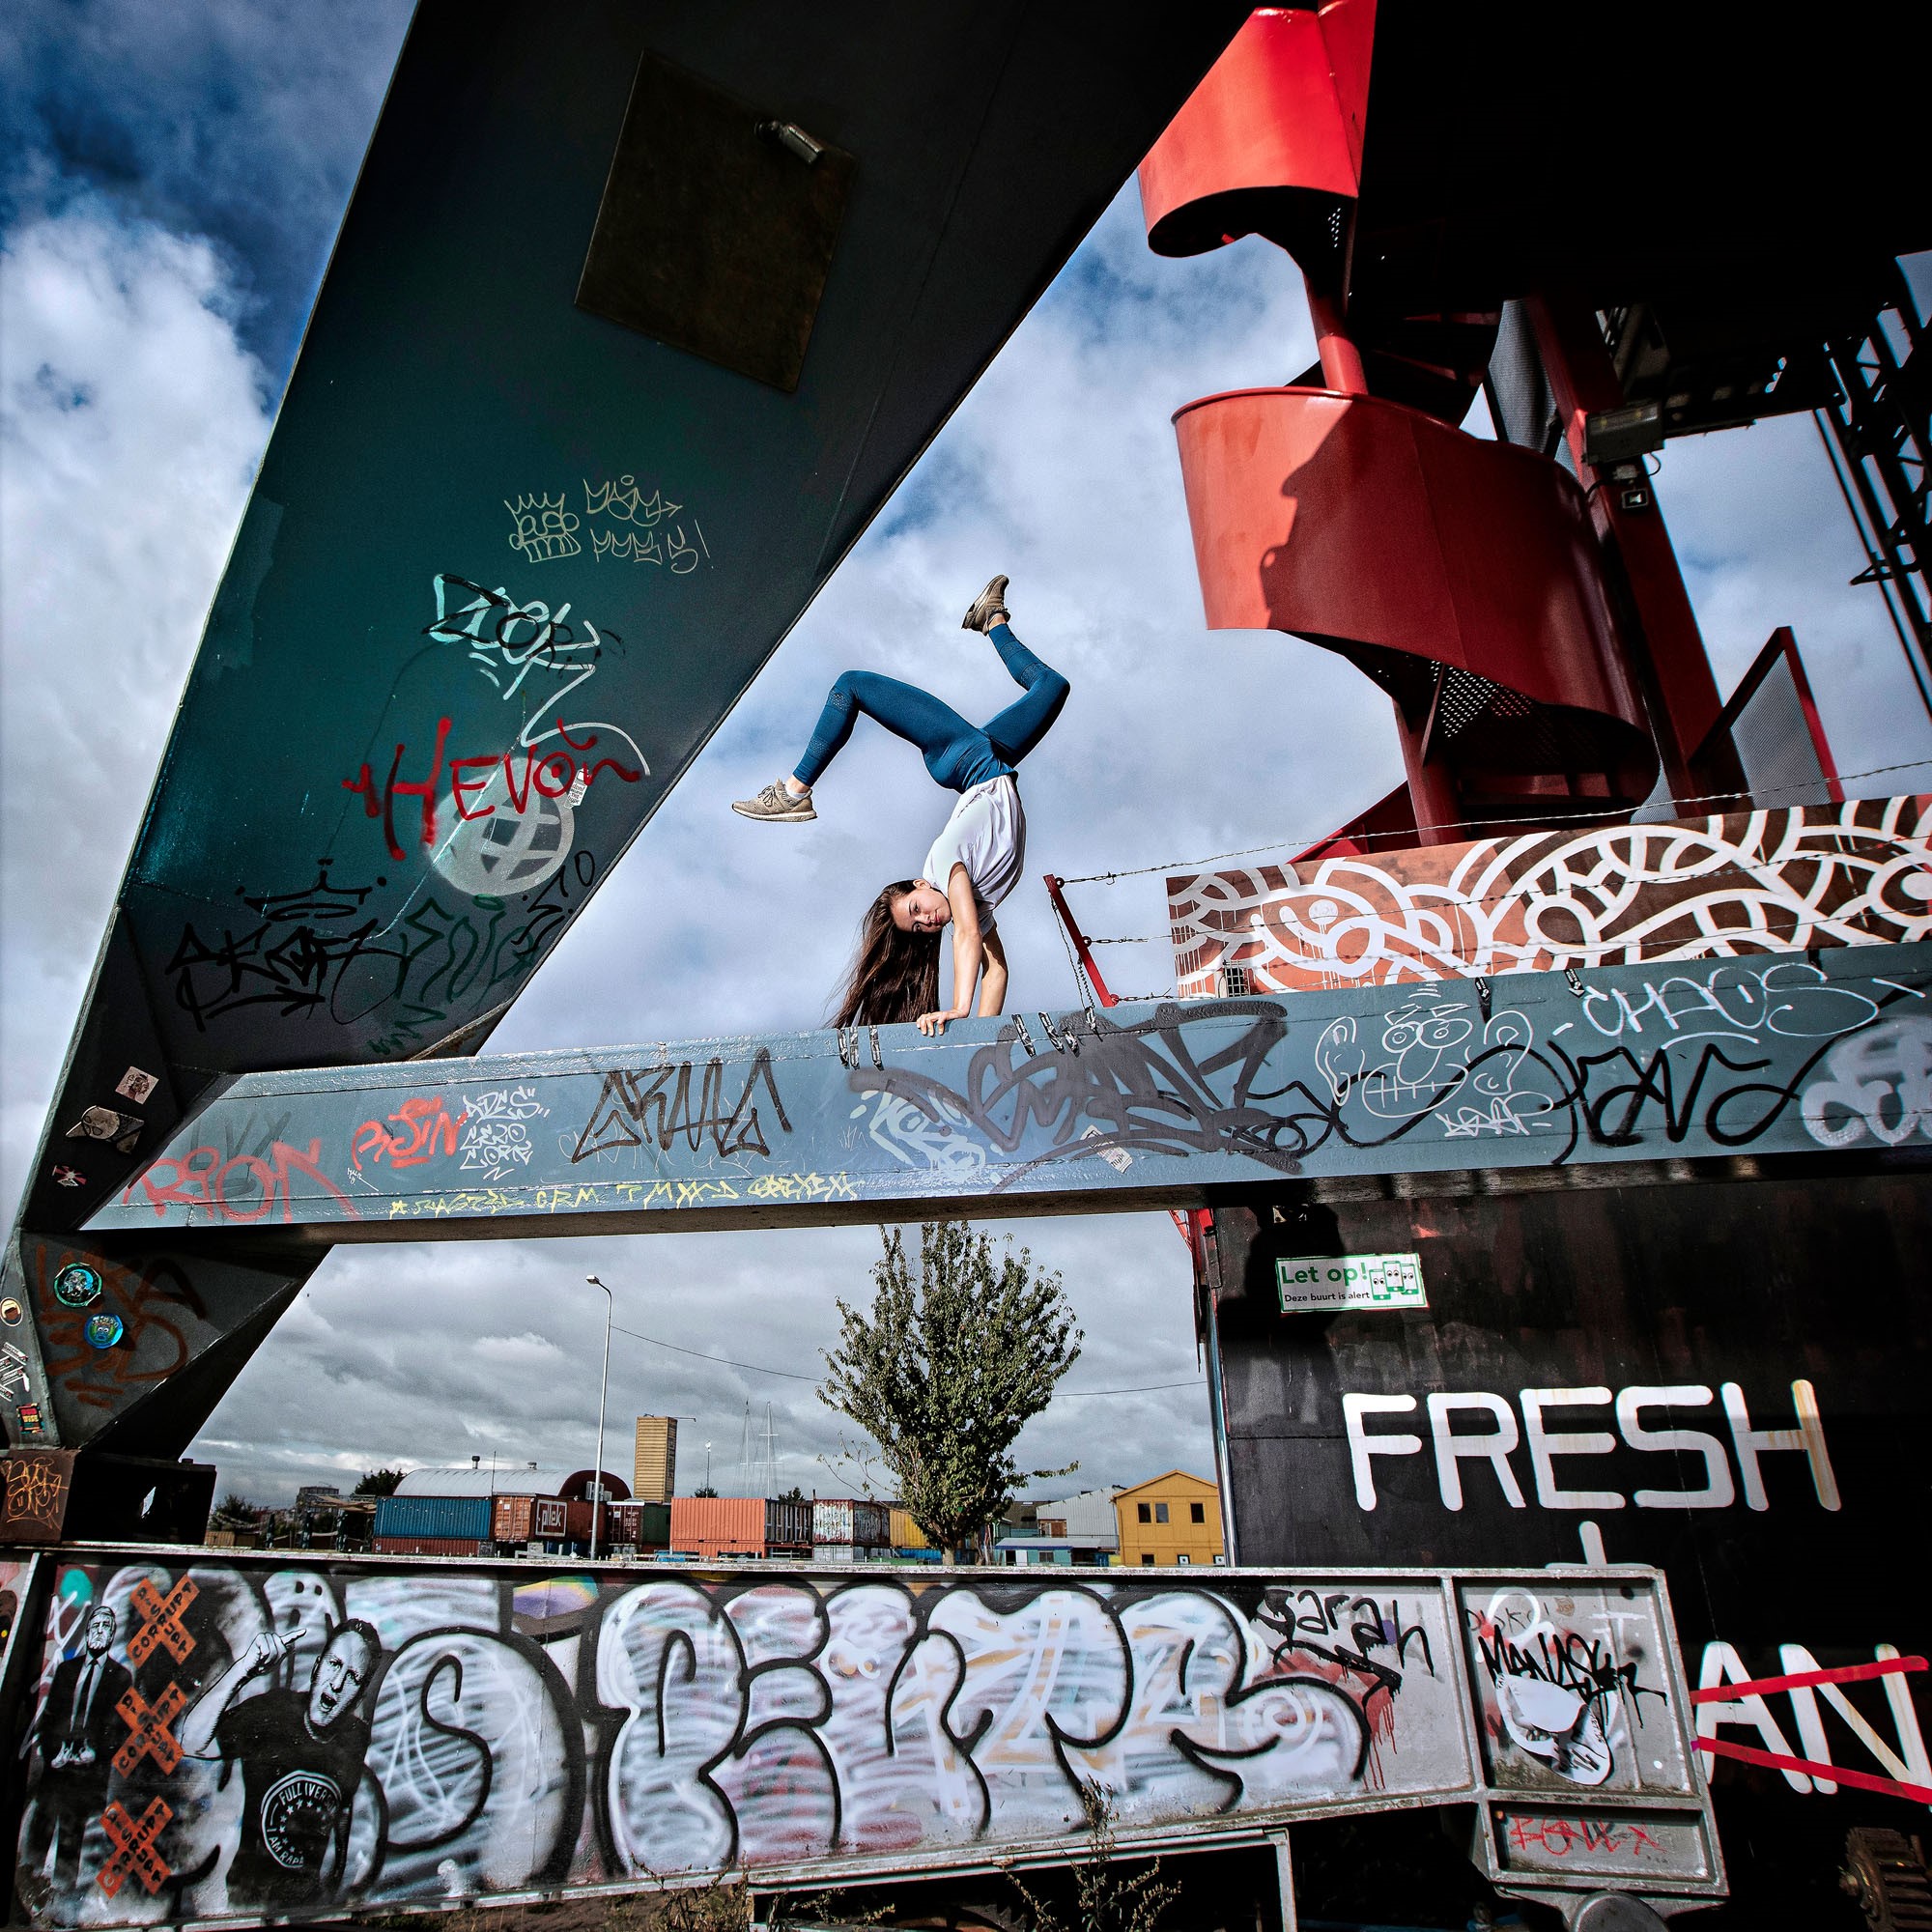 Een freerunner maakt een handstand op een buitenlocatie in de stad, een voorbeeld van urban sports (Foto van Wendy Ruijfrok).